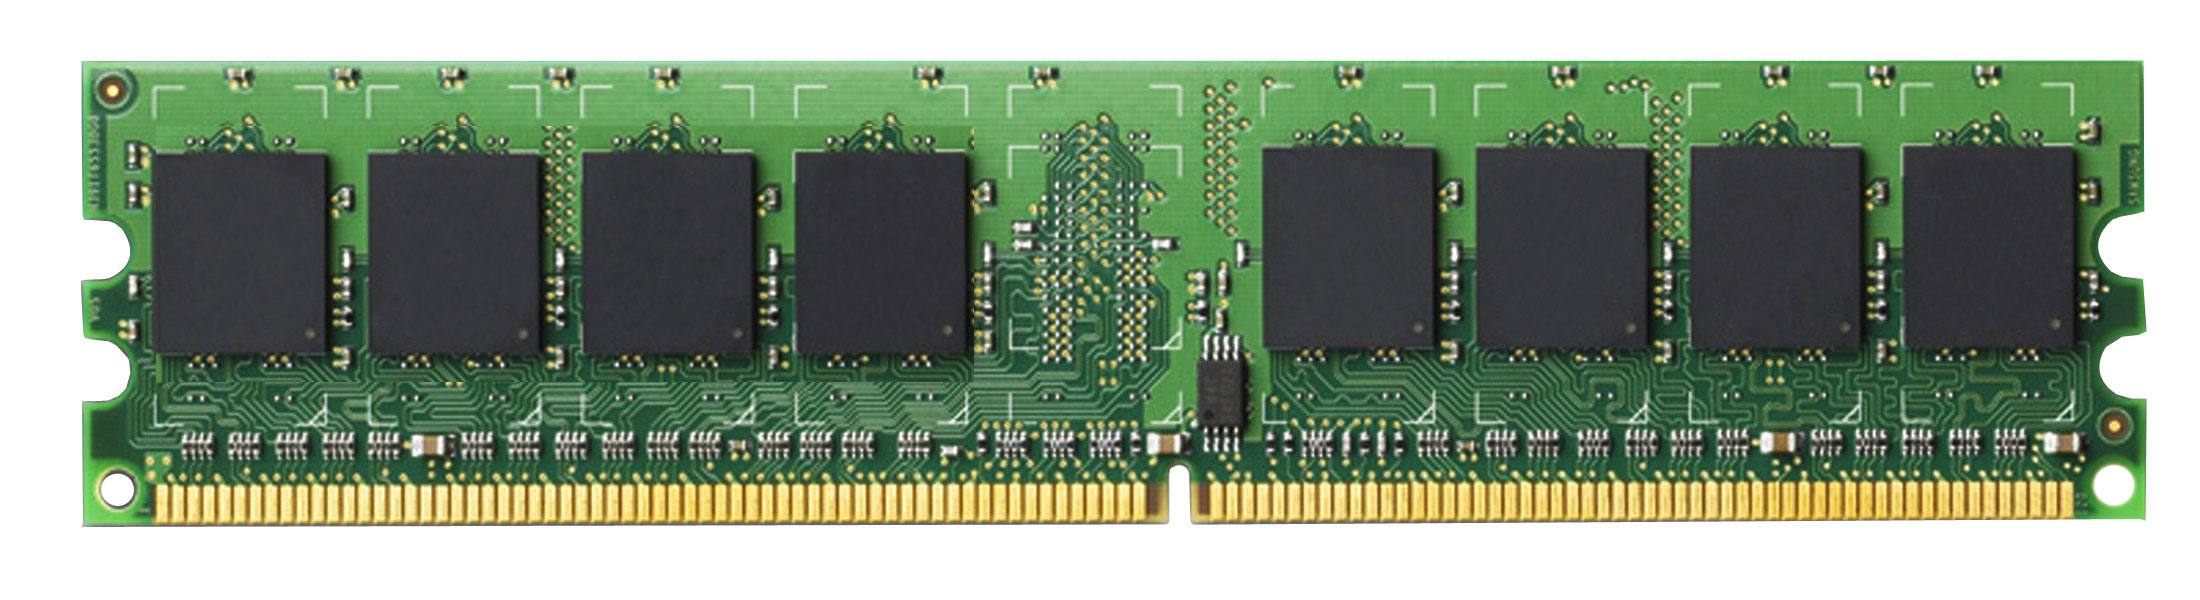 PC24200 Gateway 512MB PC2-4200 DDR2-533MHz non-ECC Unbuffered CL4 240-Pin DIMM Memory Module